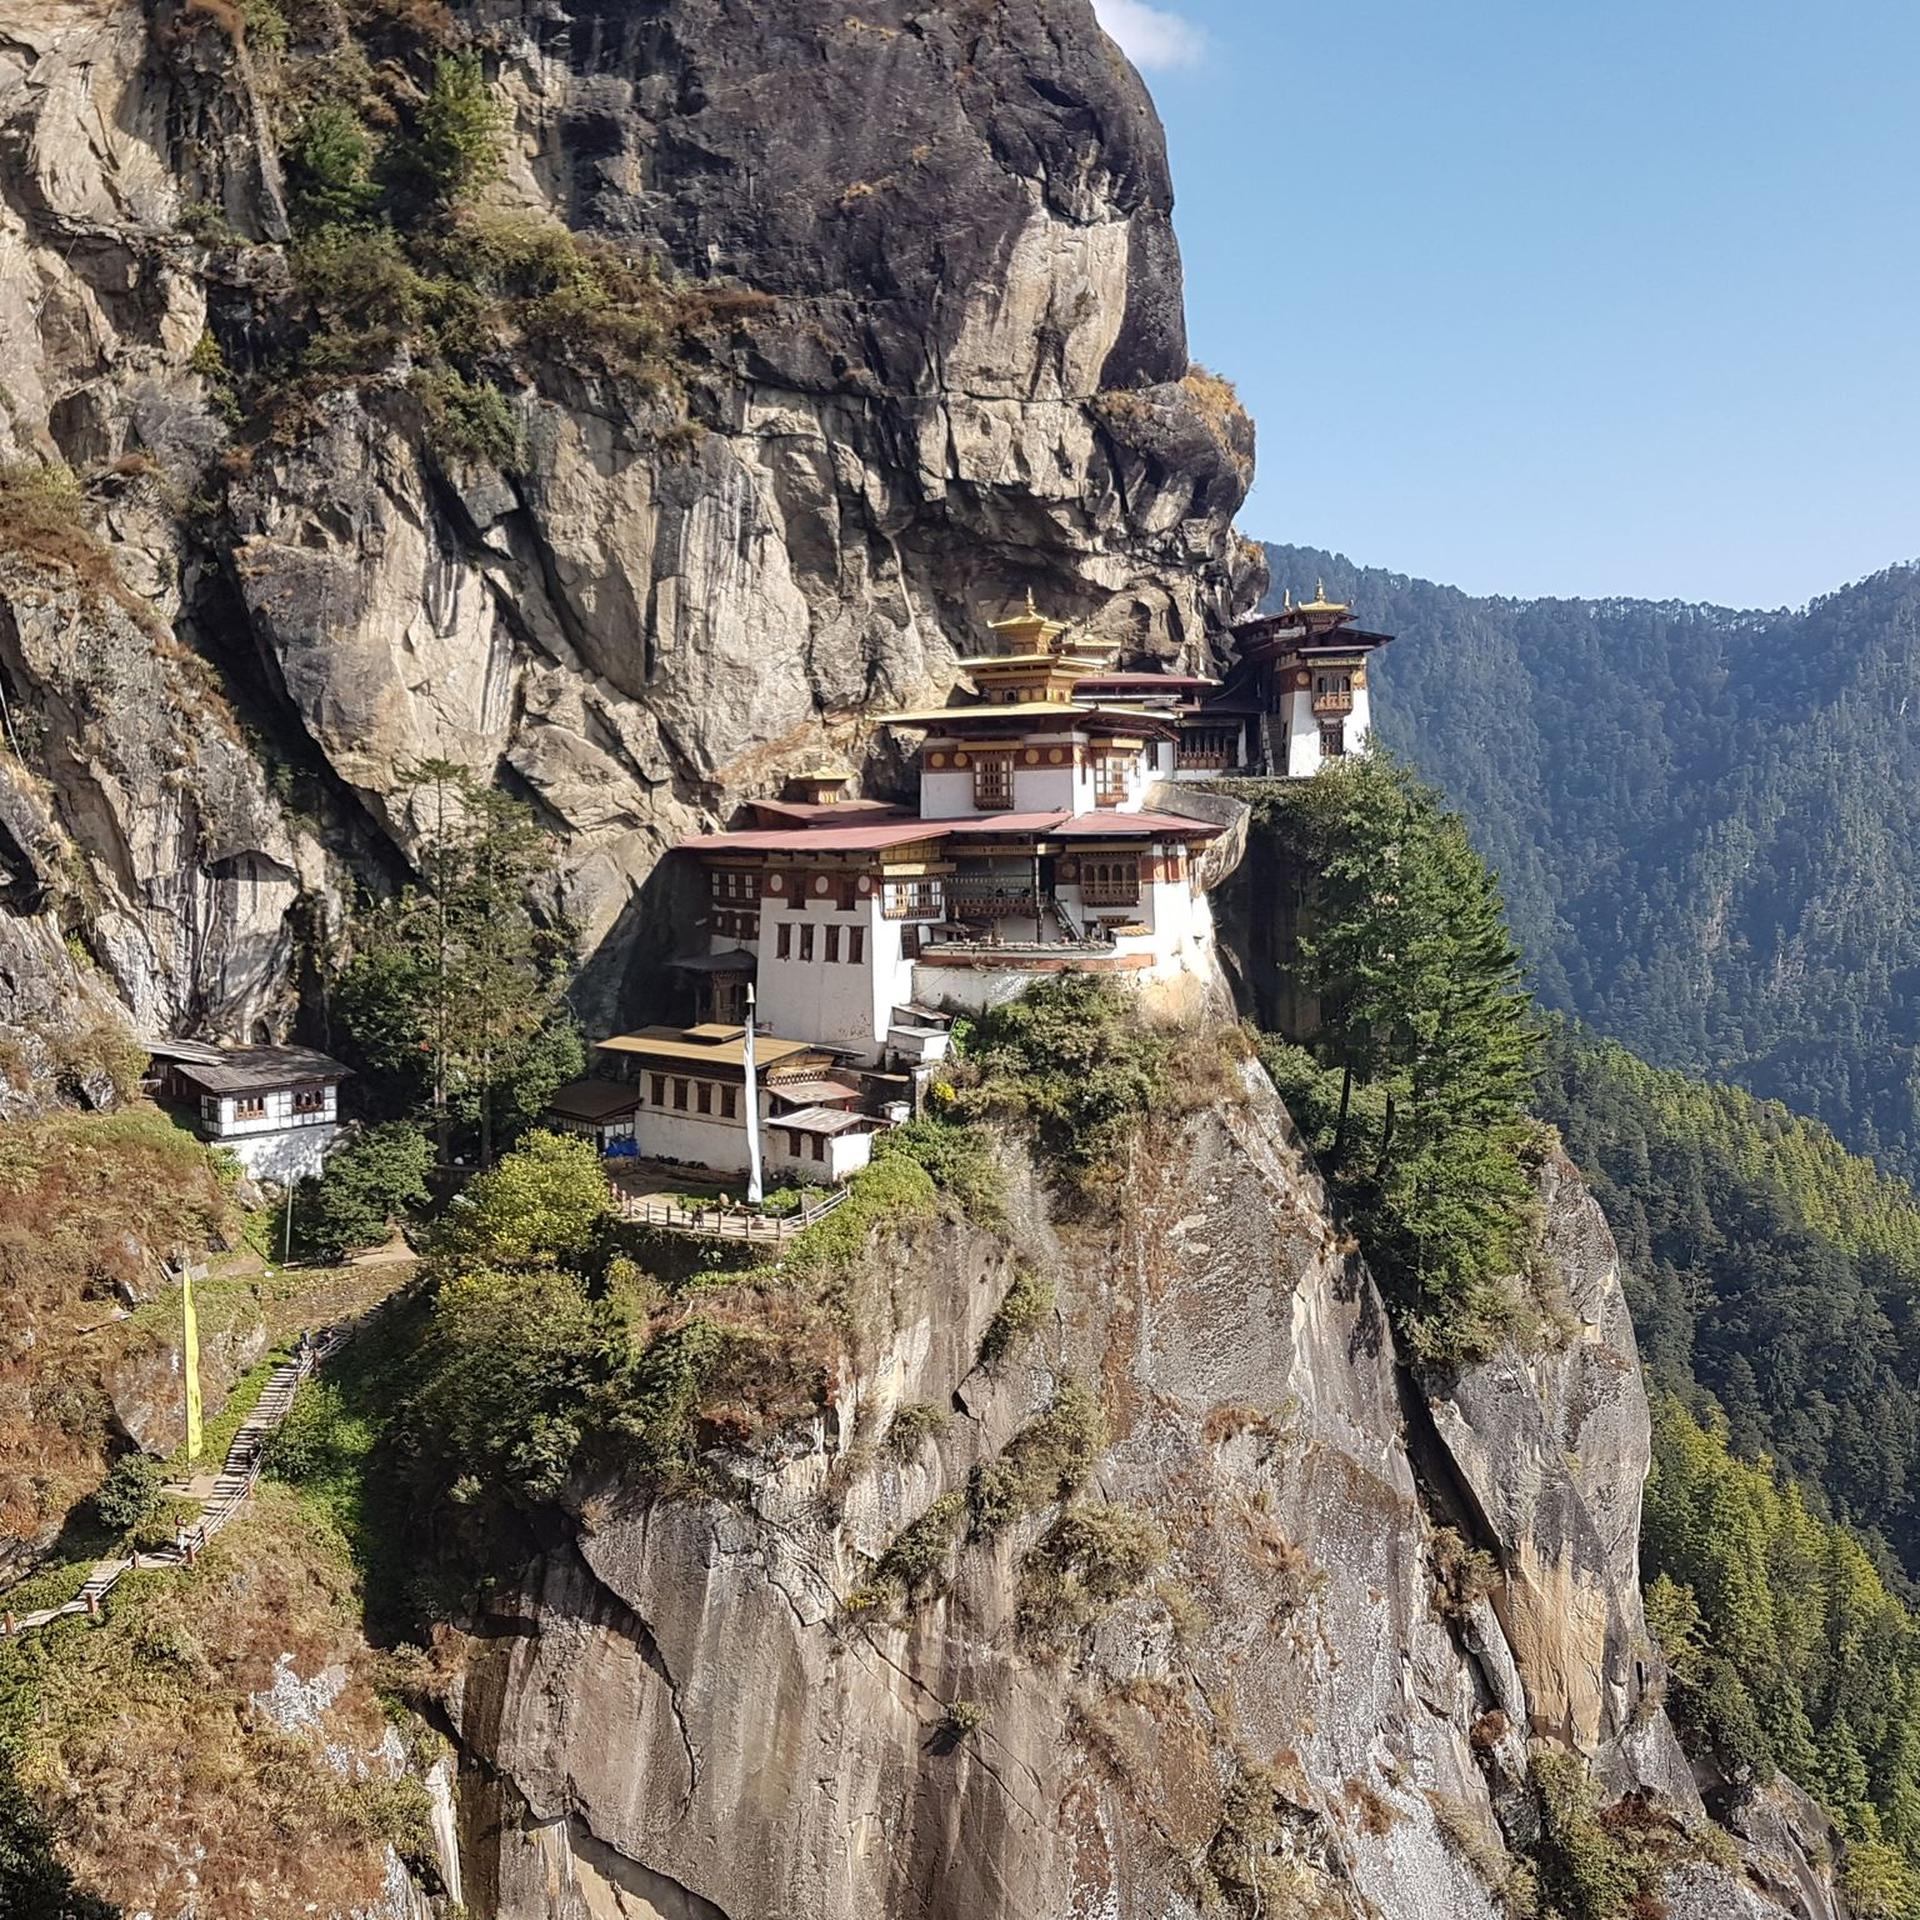 Blick auf das buddhistische Tigernest-Kloster in Bhutan: Touristen müssen nun keine Auslandsreise-Krankenversicherung nachweisen, um ins Land reisen zu können.